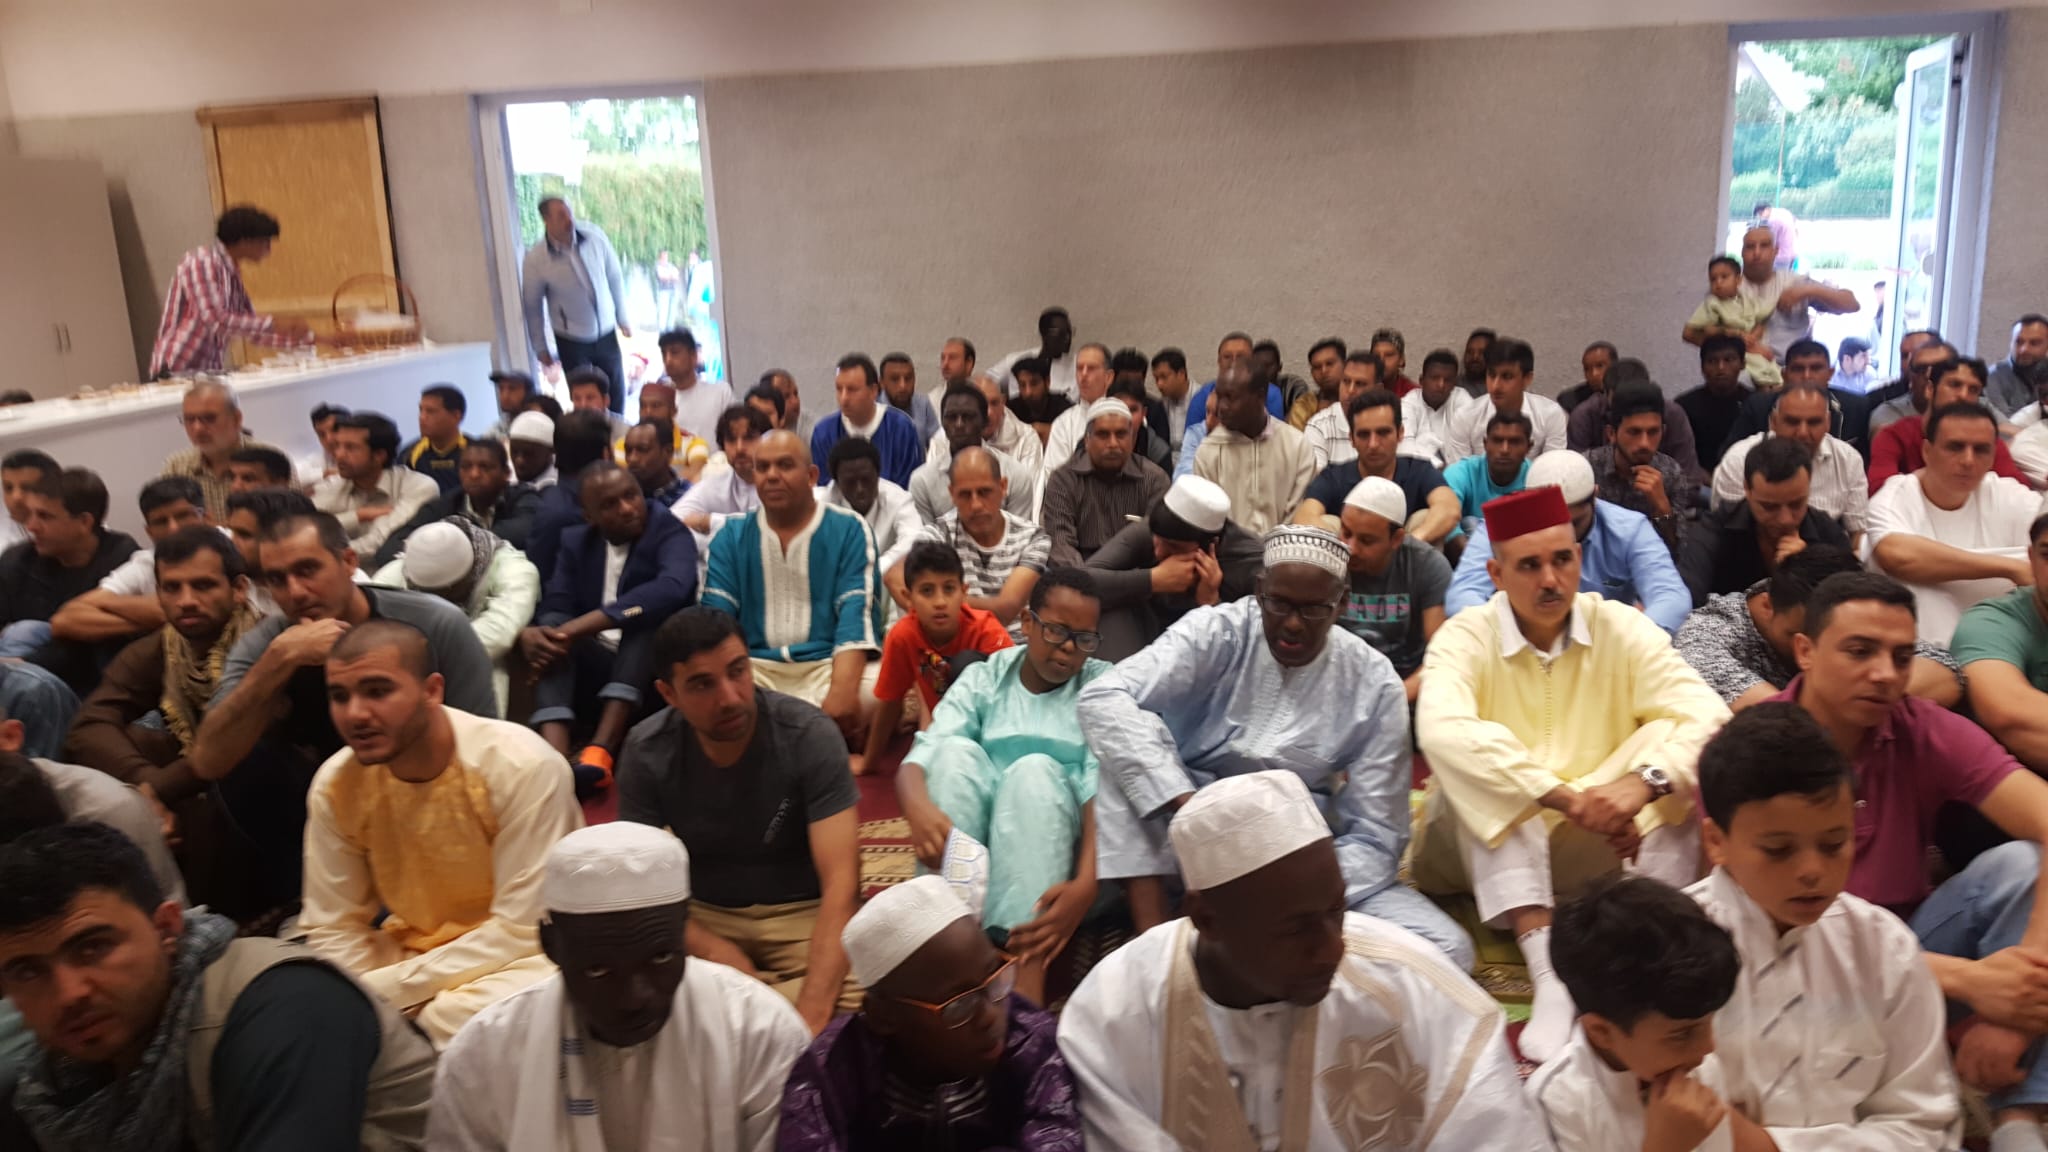 La comunità musulmana festeggia Eid Al Adha, in 300 pregano a Gorizia